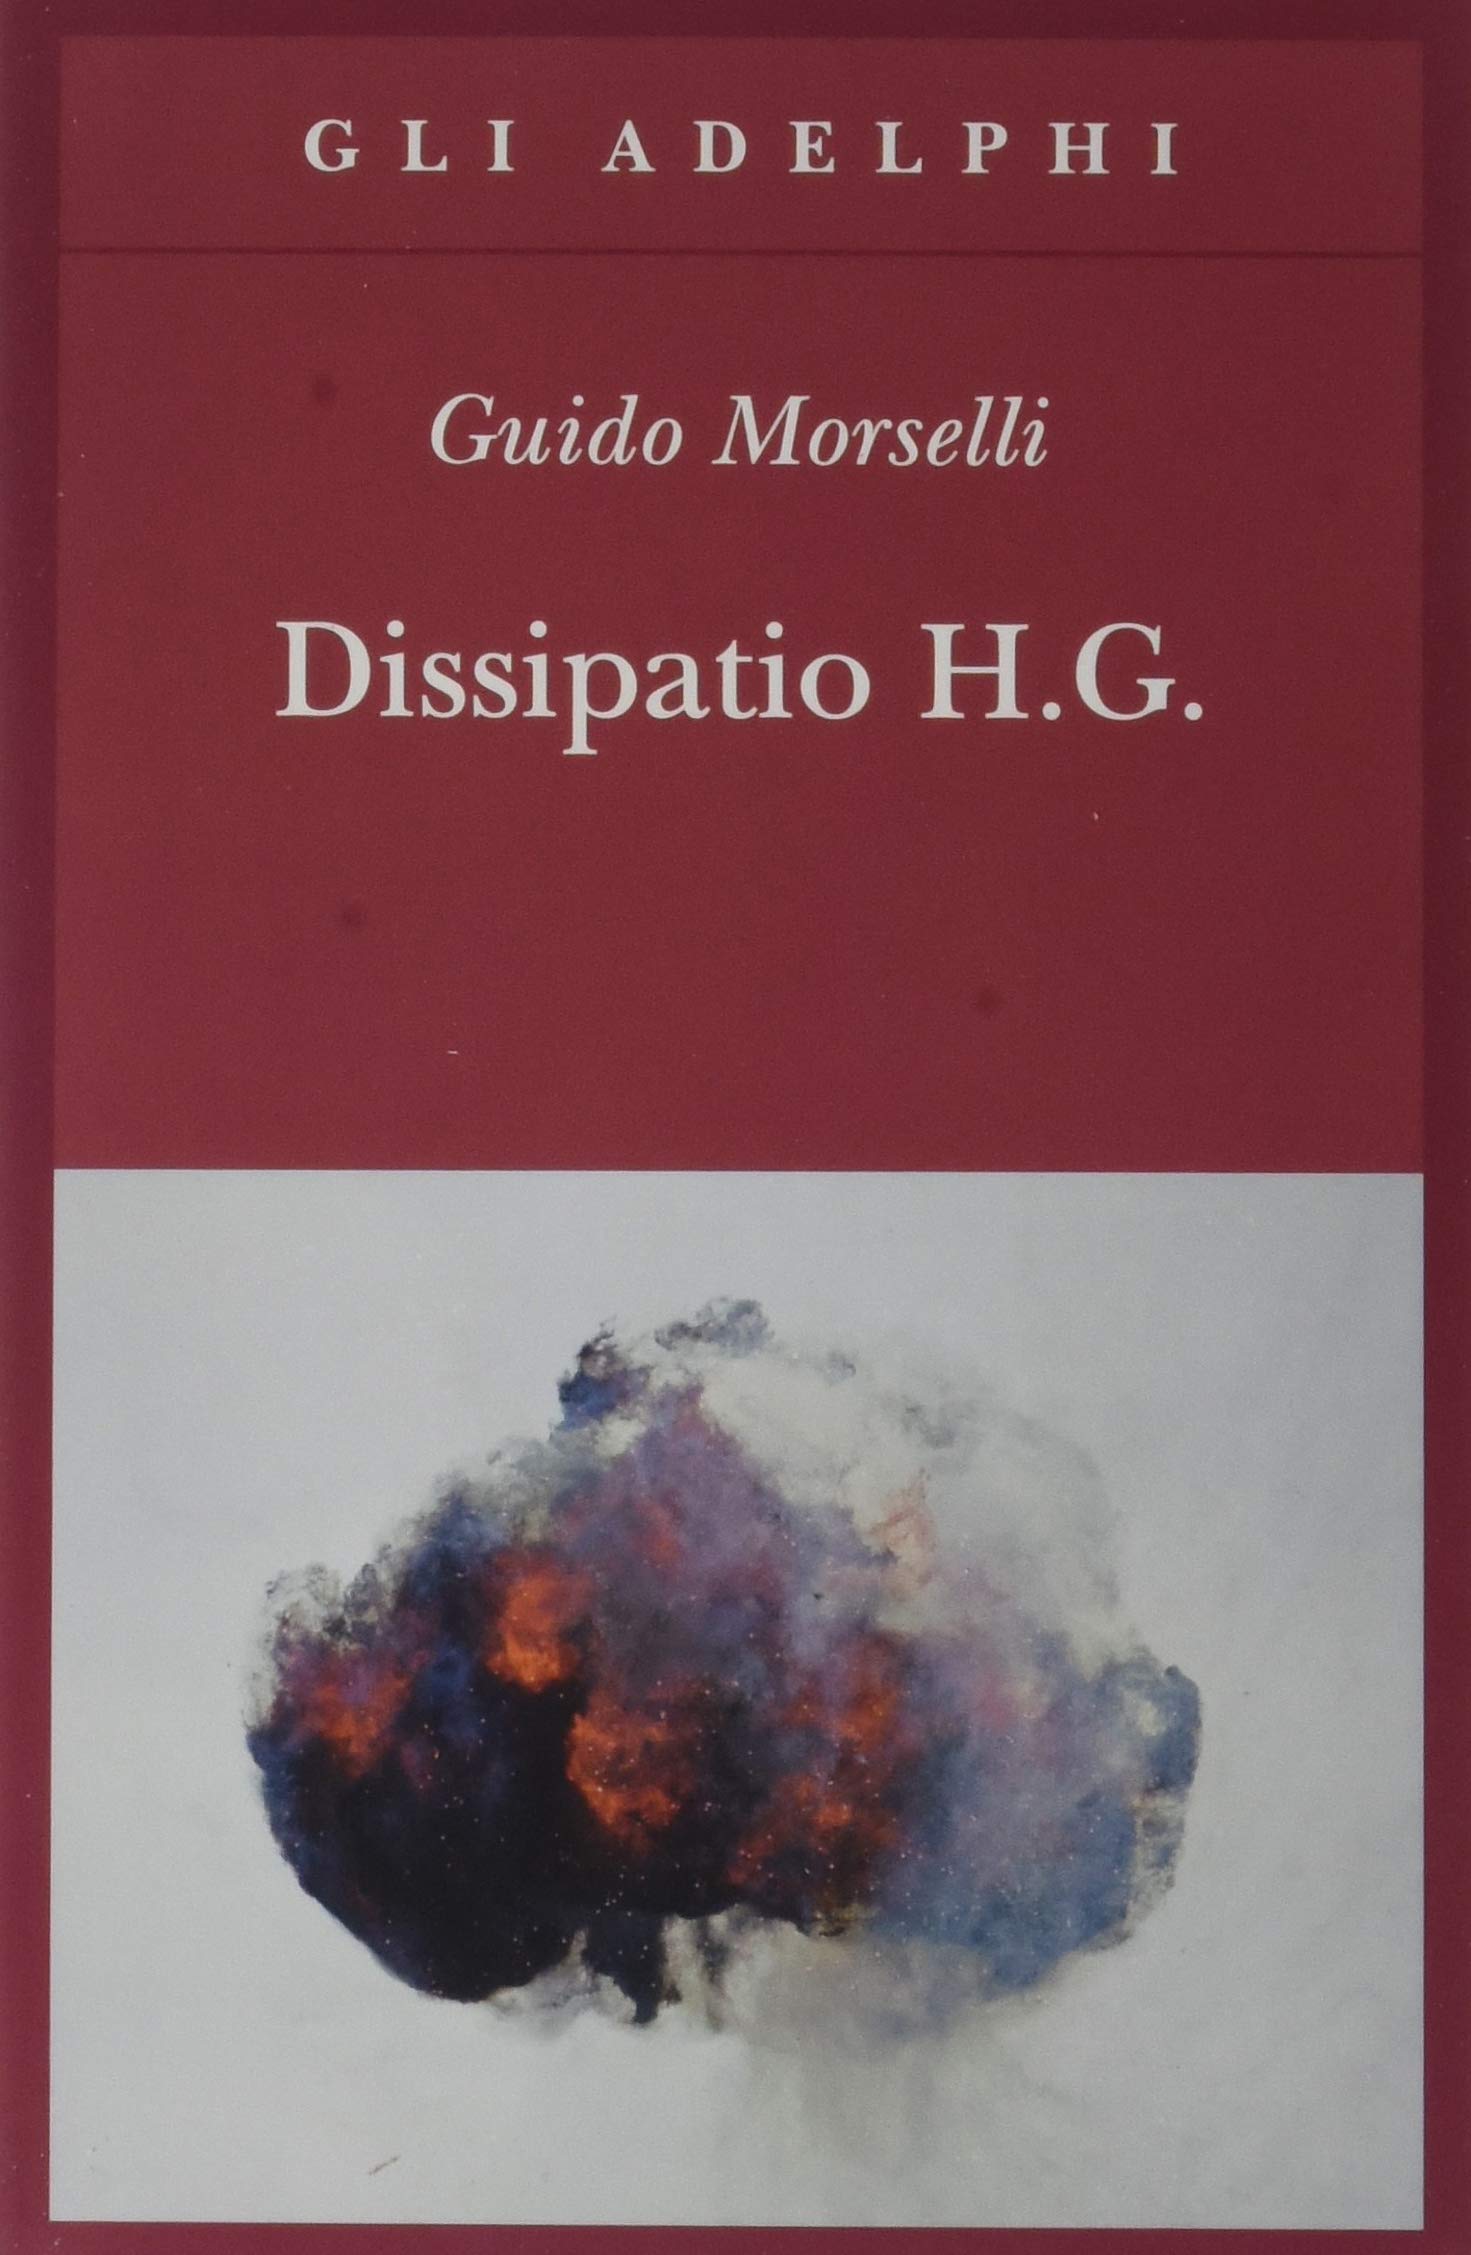 Guido Morselli: Dissipatio H. G. (Paperback, Italiano language, 2012, Adelphi)